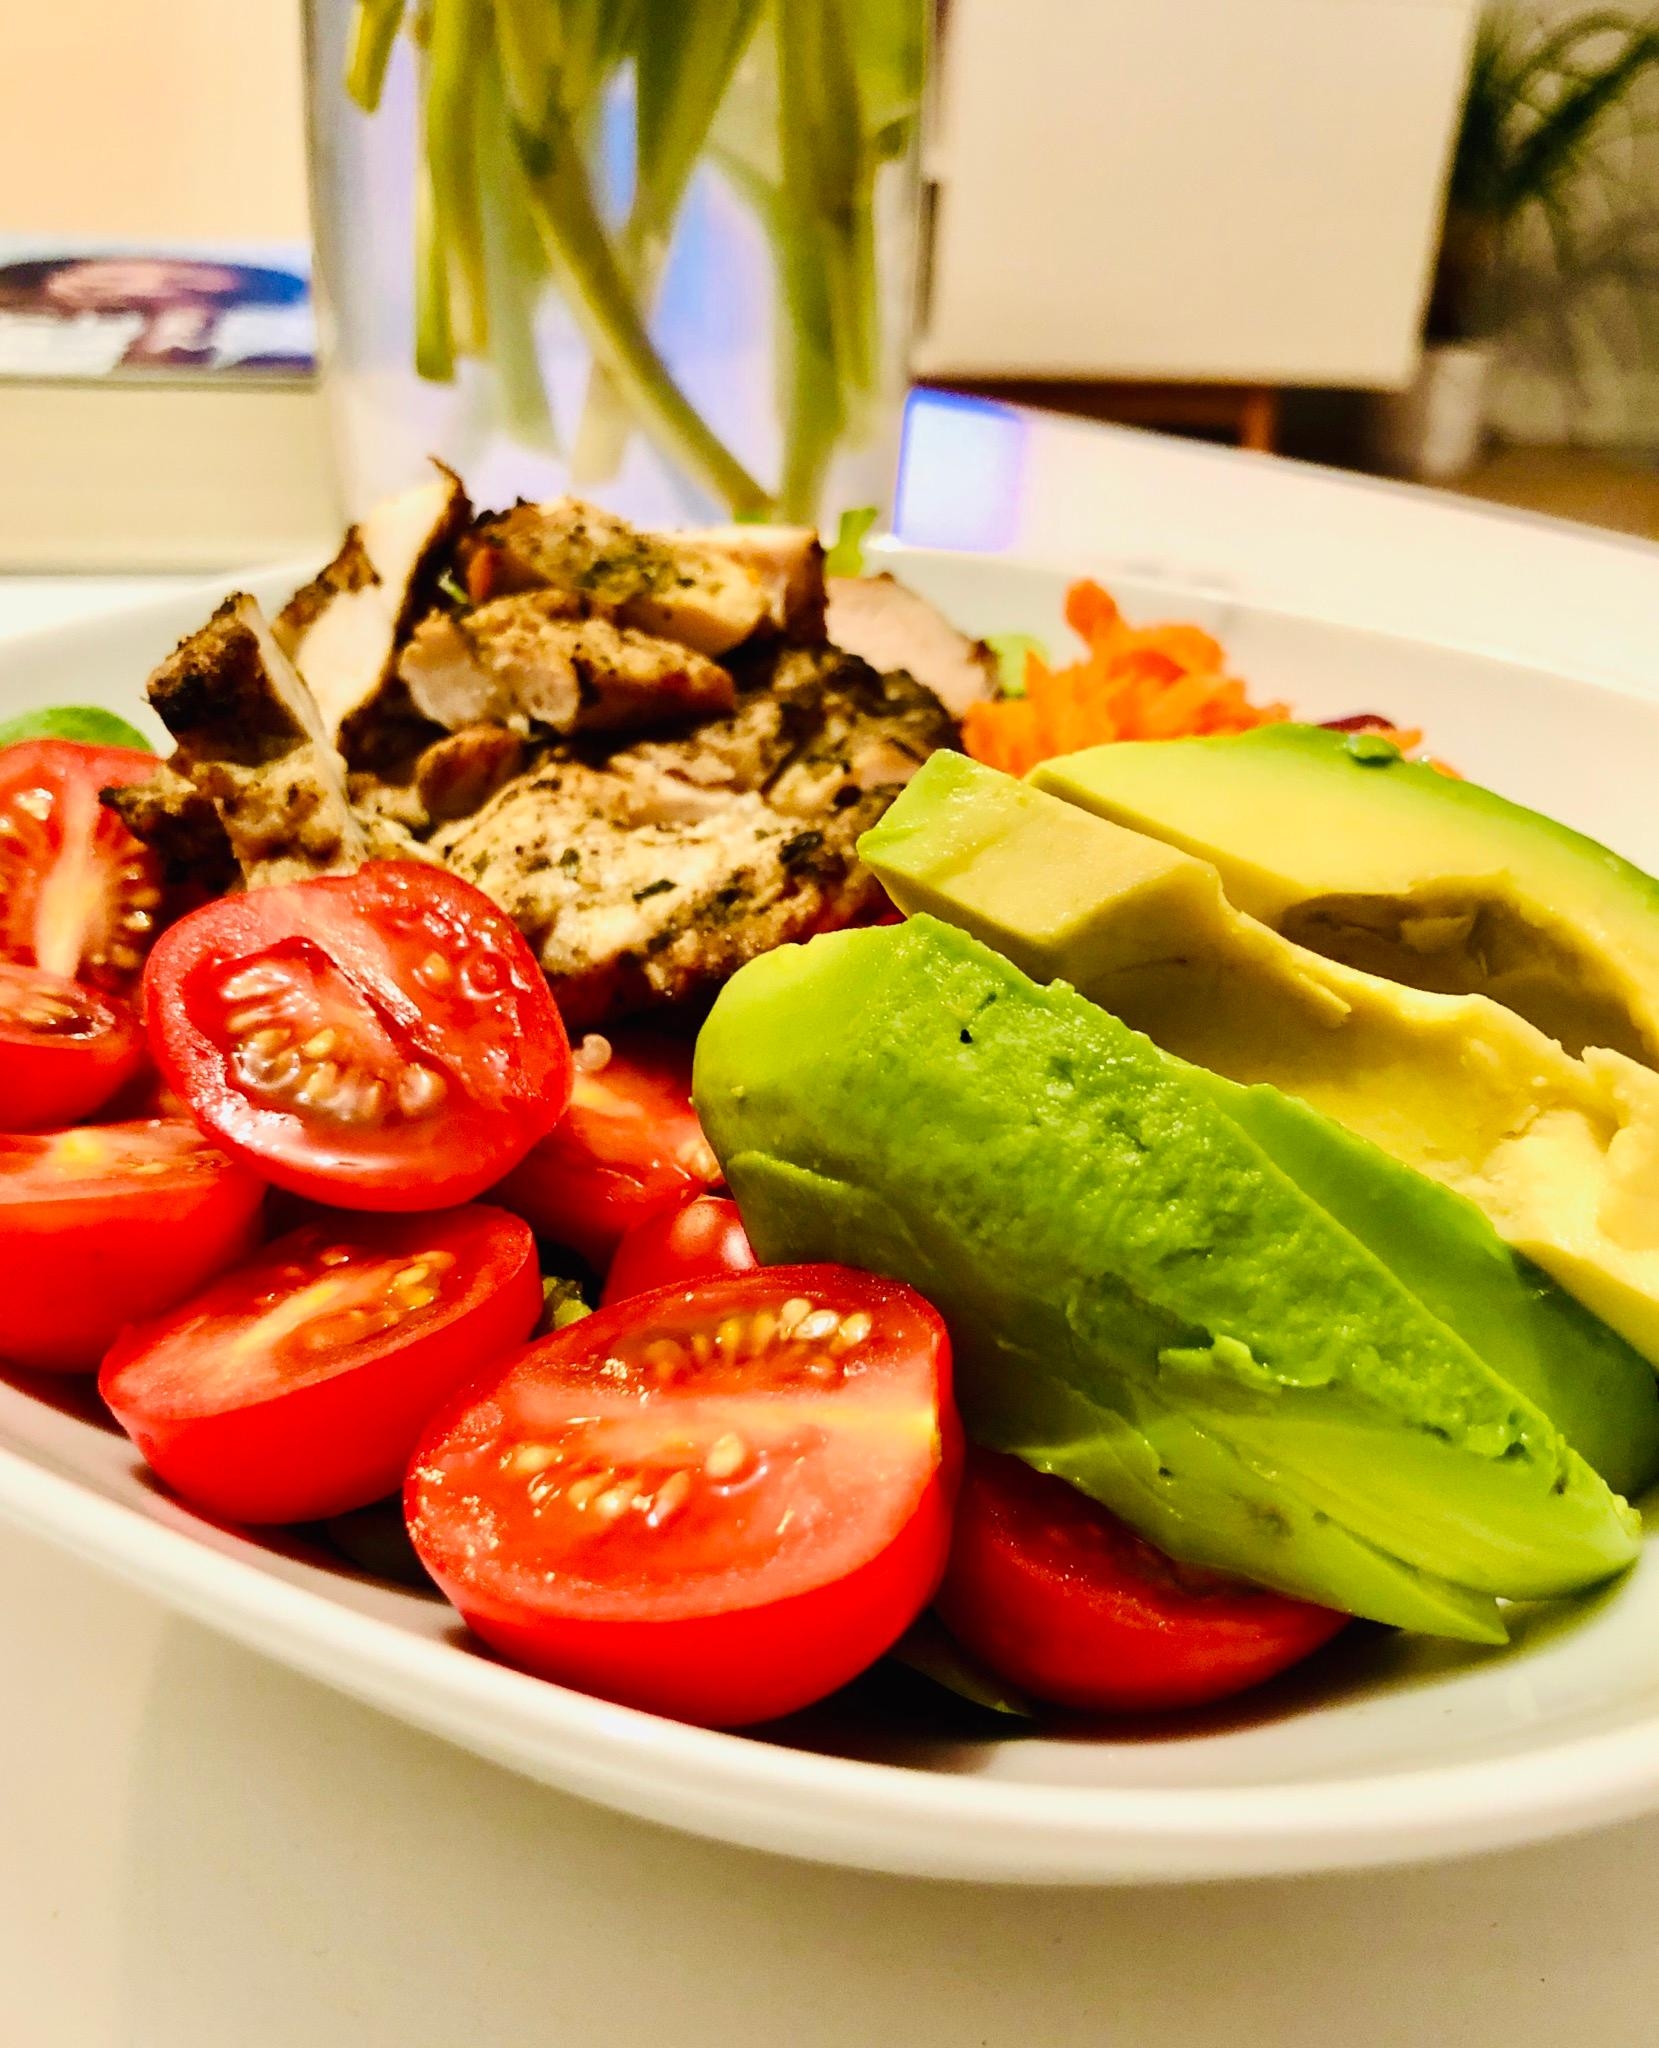 Zum Feierabend noch schnell einen Avocado-Hähnchen-Salat gezaubert #foodlover #healthyfood #bowl